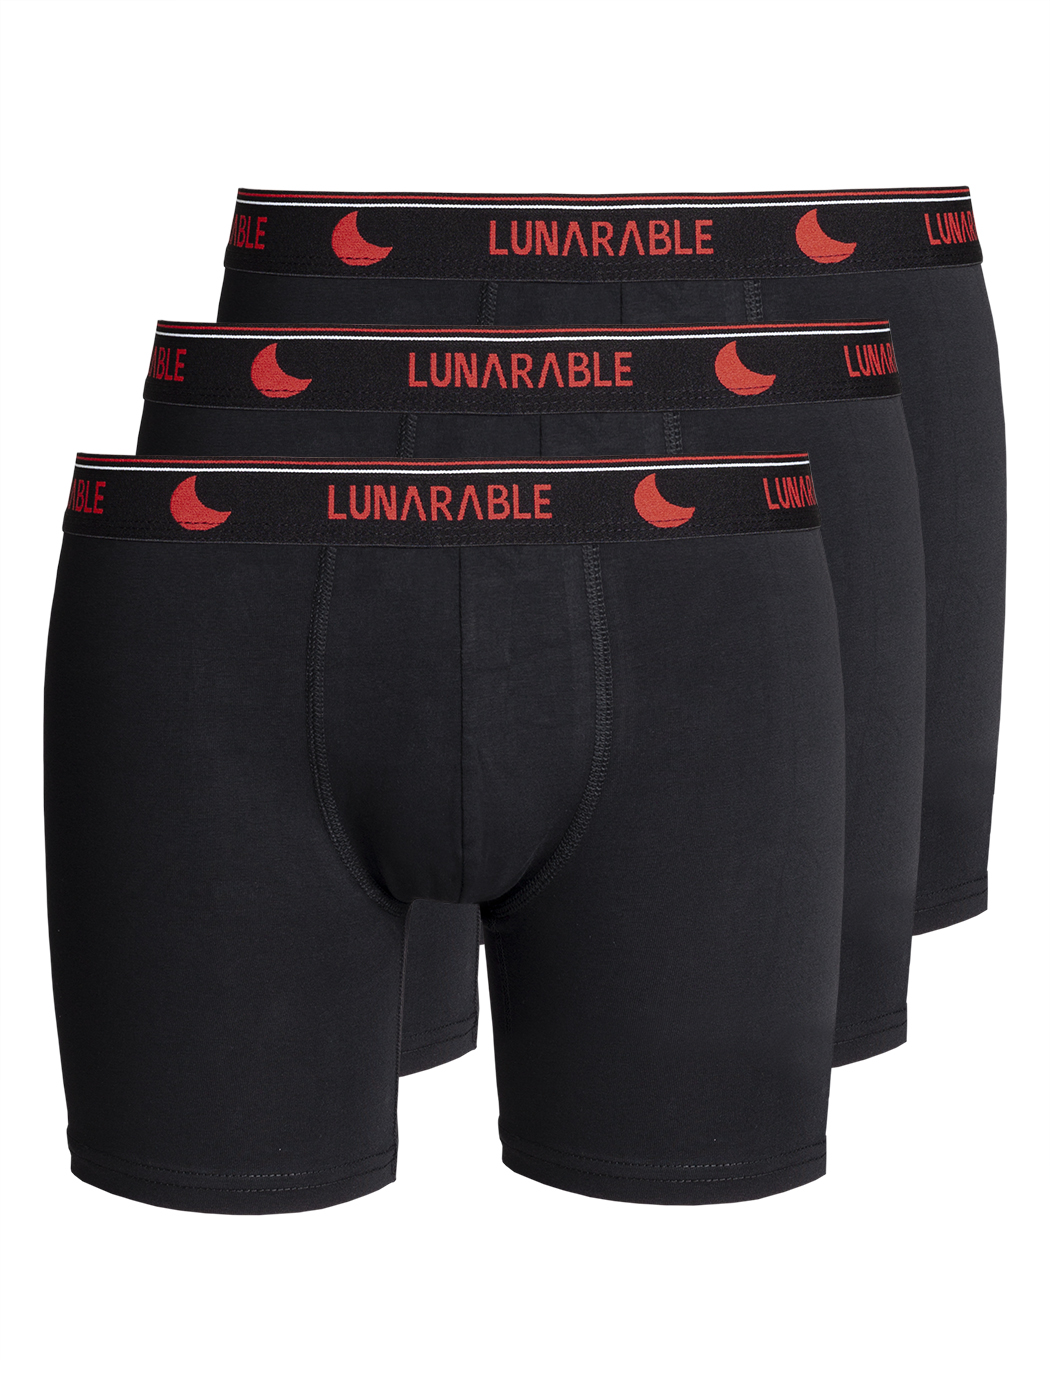 Комплект трусов мужских Lunarable ebox180_ черных XXL